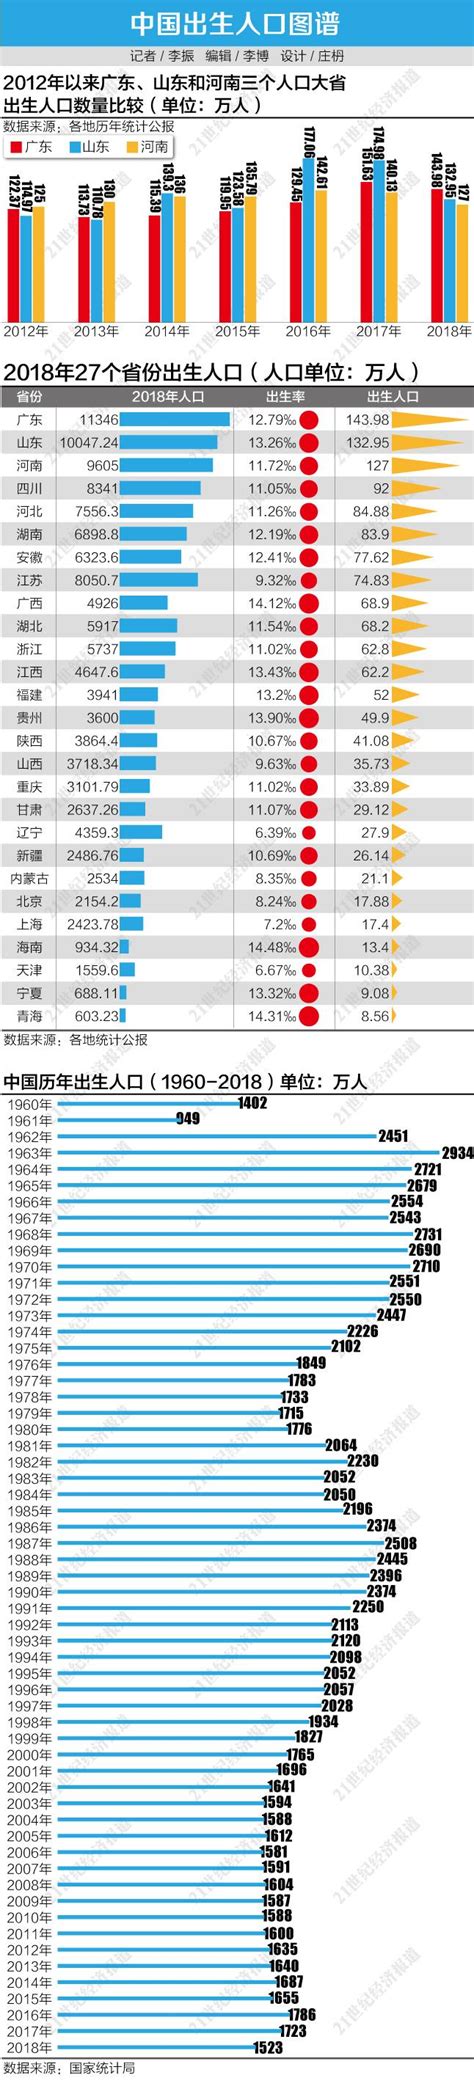 2018年出生人口图谱： 广东“最能生”，东北出生率垫底 - 宏观 - 南方财经网